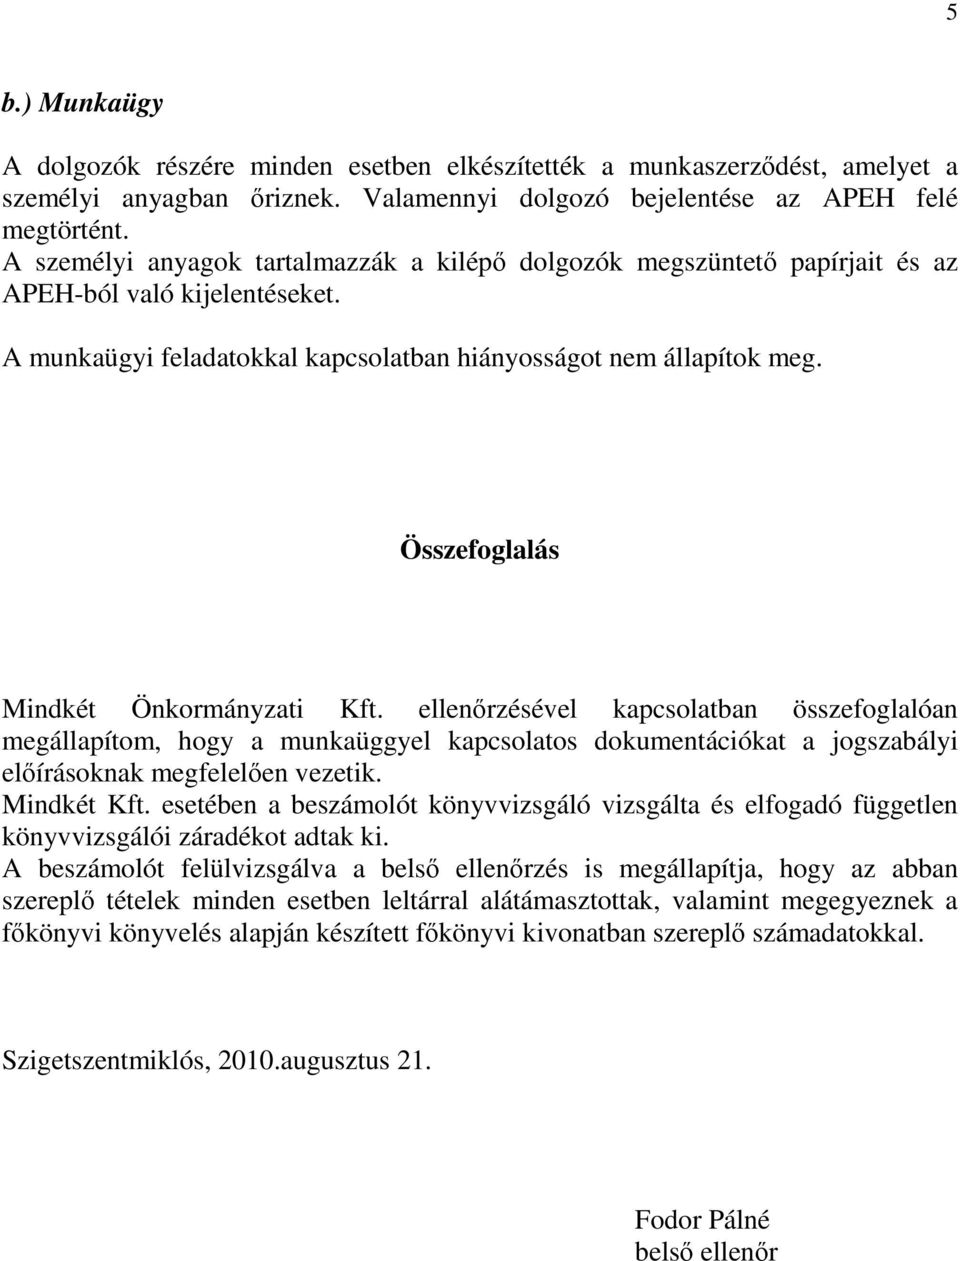 Összefoglalás Mindkét Önkormányzati Kft. ellenırzésével kapcsolatban összefoglalóan megállapítom, hogy a munkaüggyel kapcsolatos dokumentációkat a jogszabályi elıírásoknak megfelelıen vezetik.